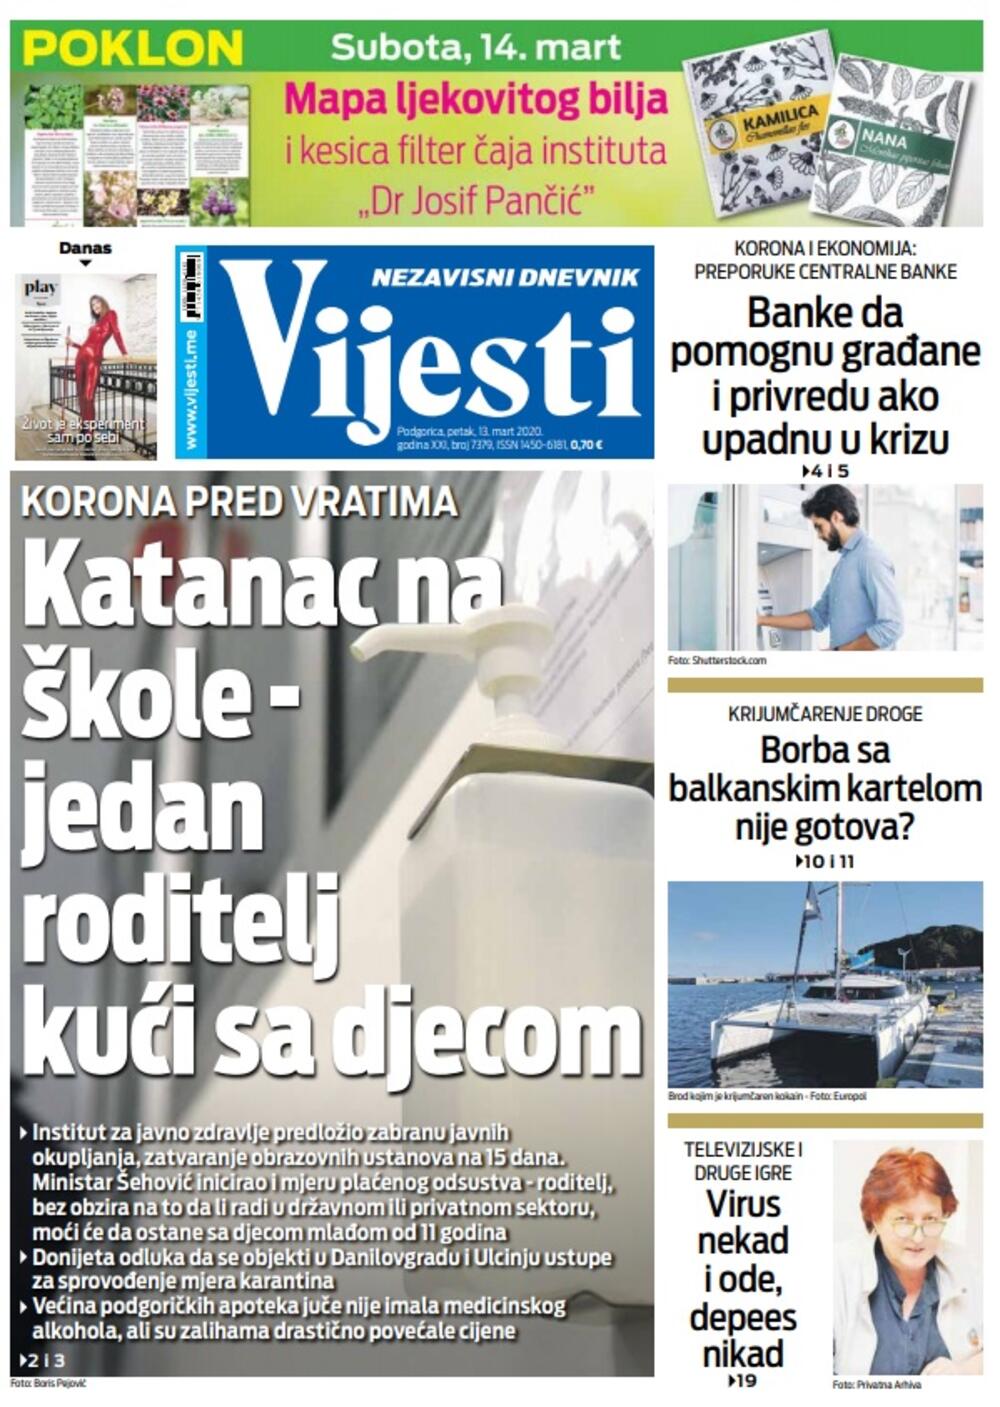 Naslovna strana "Vijesti" za petak 13. mart 2020. godine